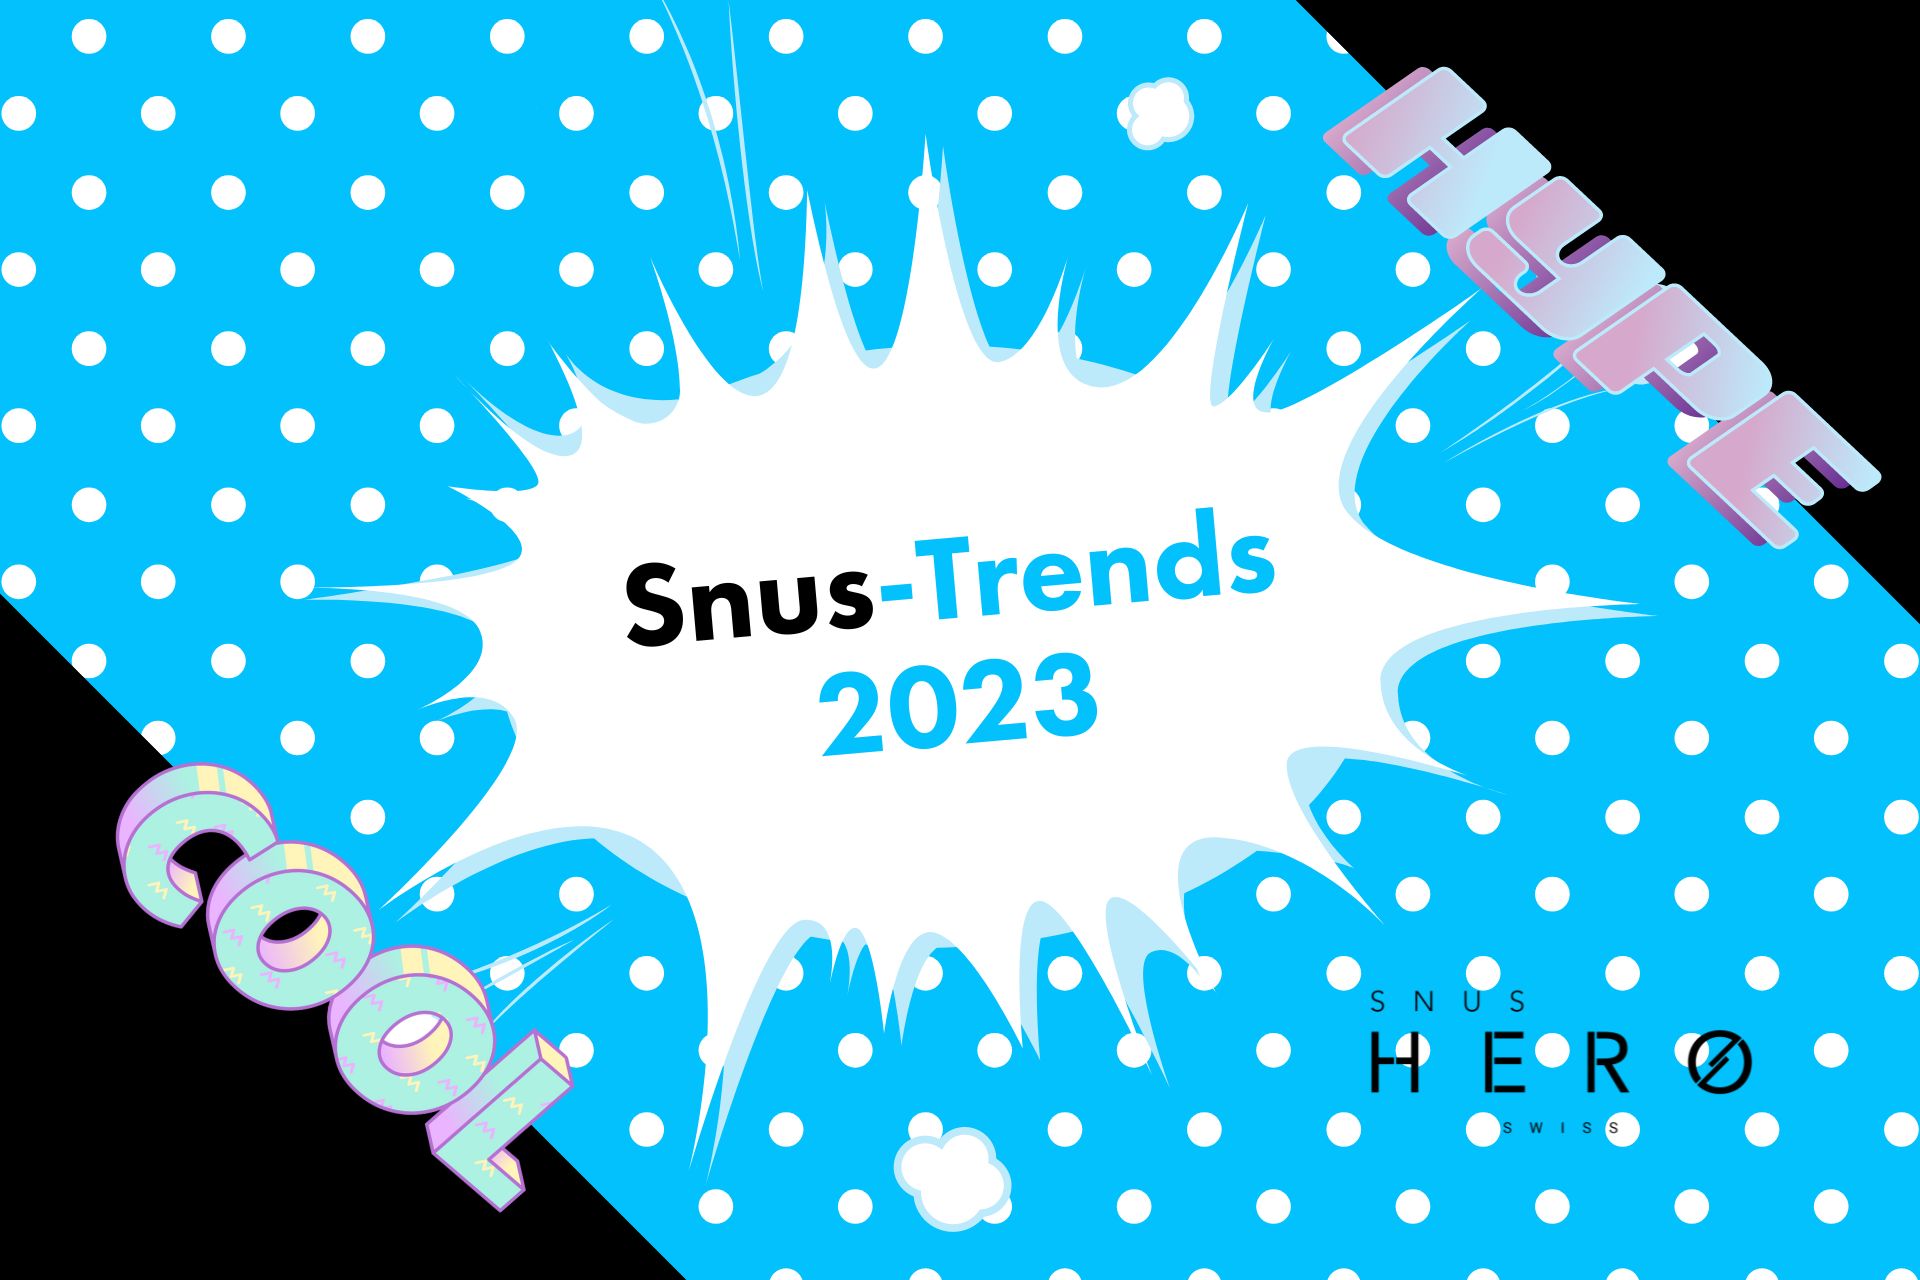 Snus-Trends 2023